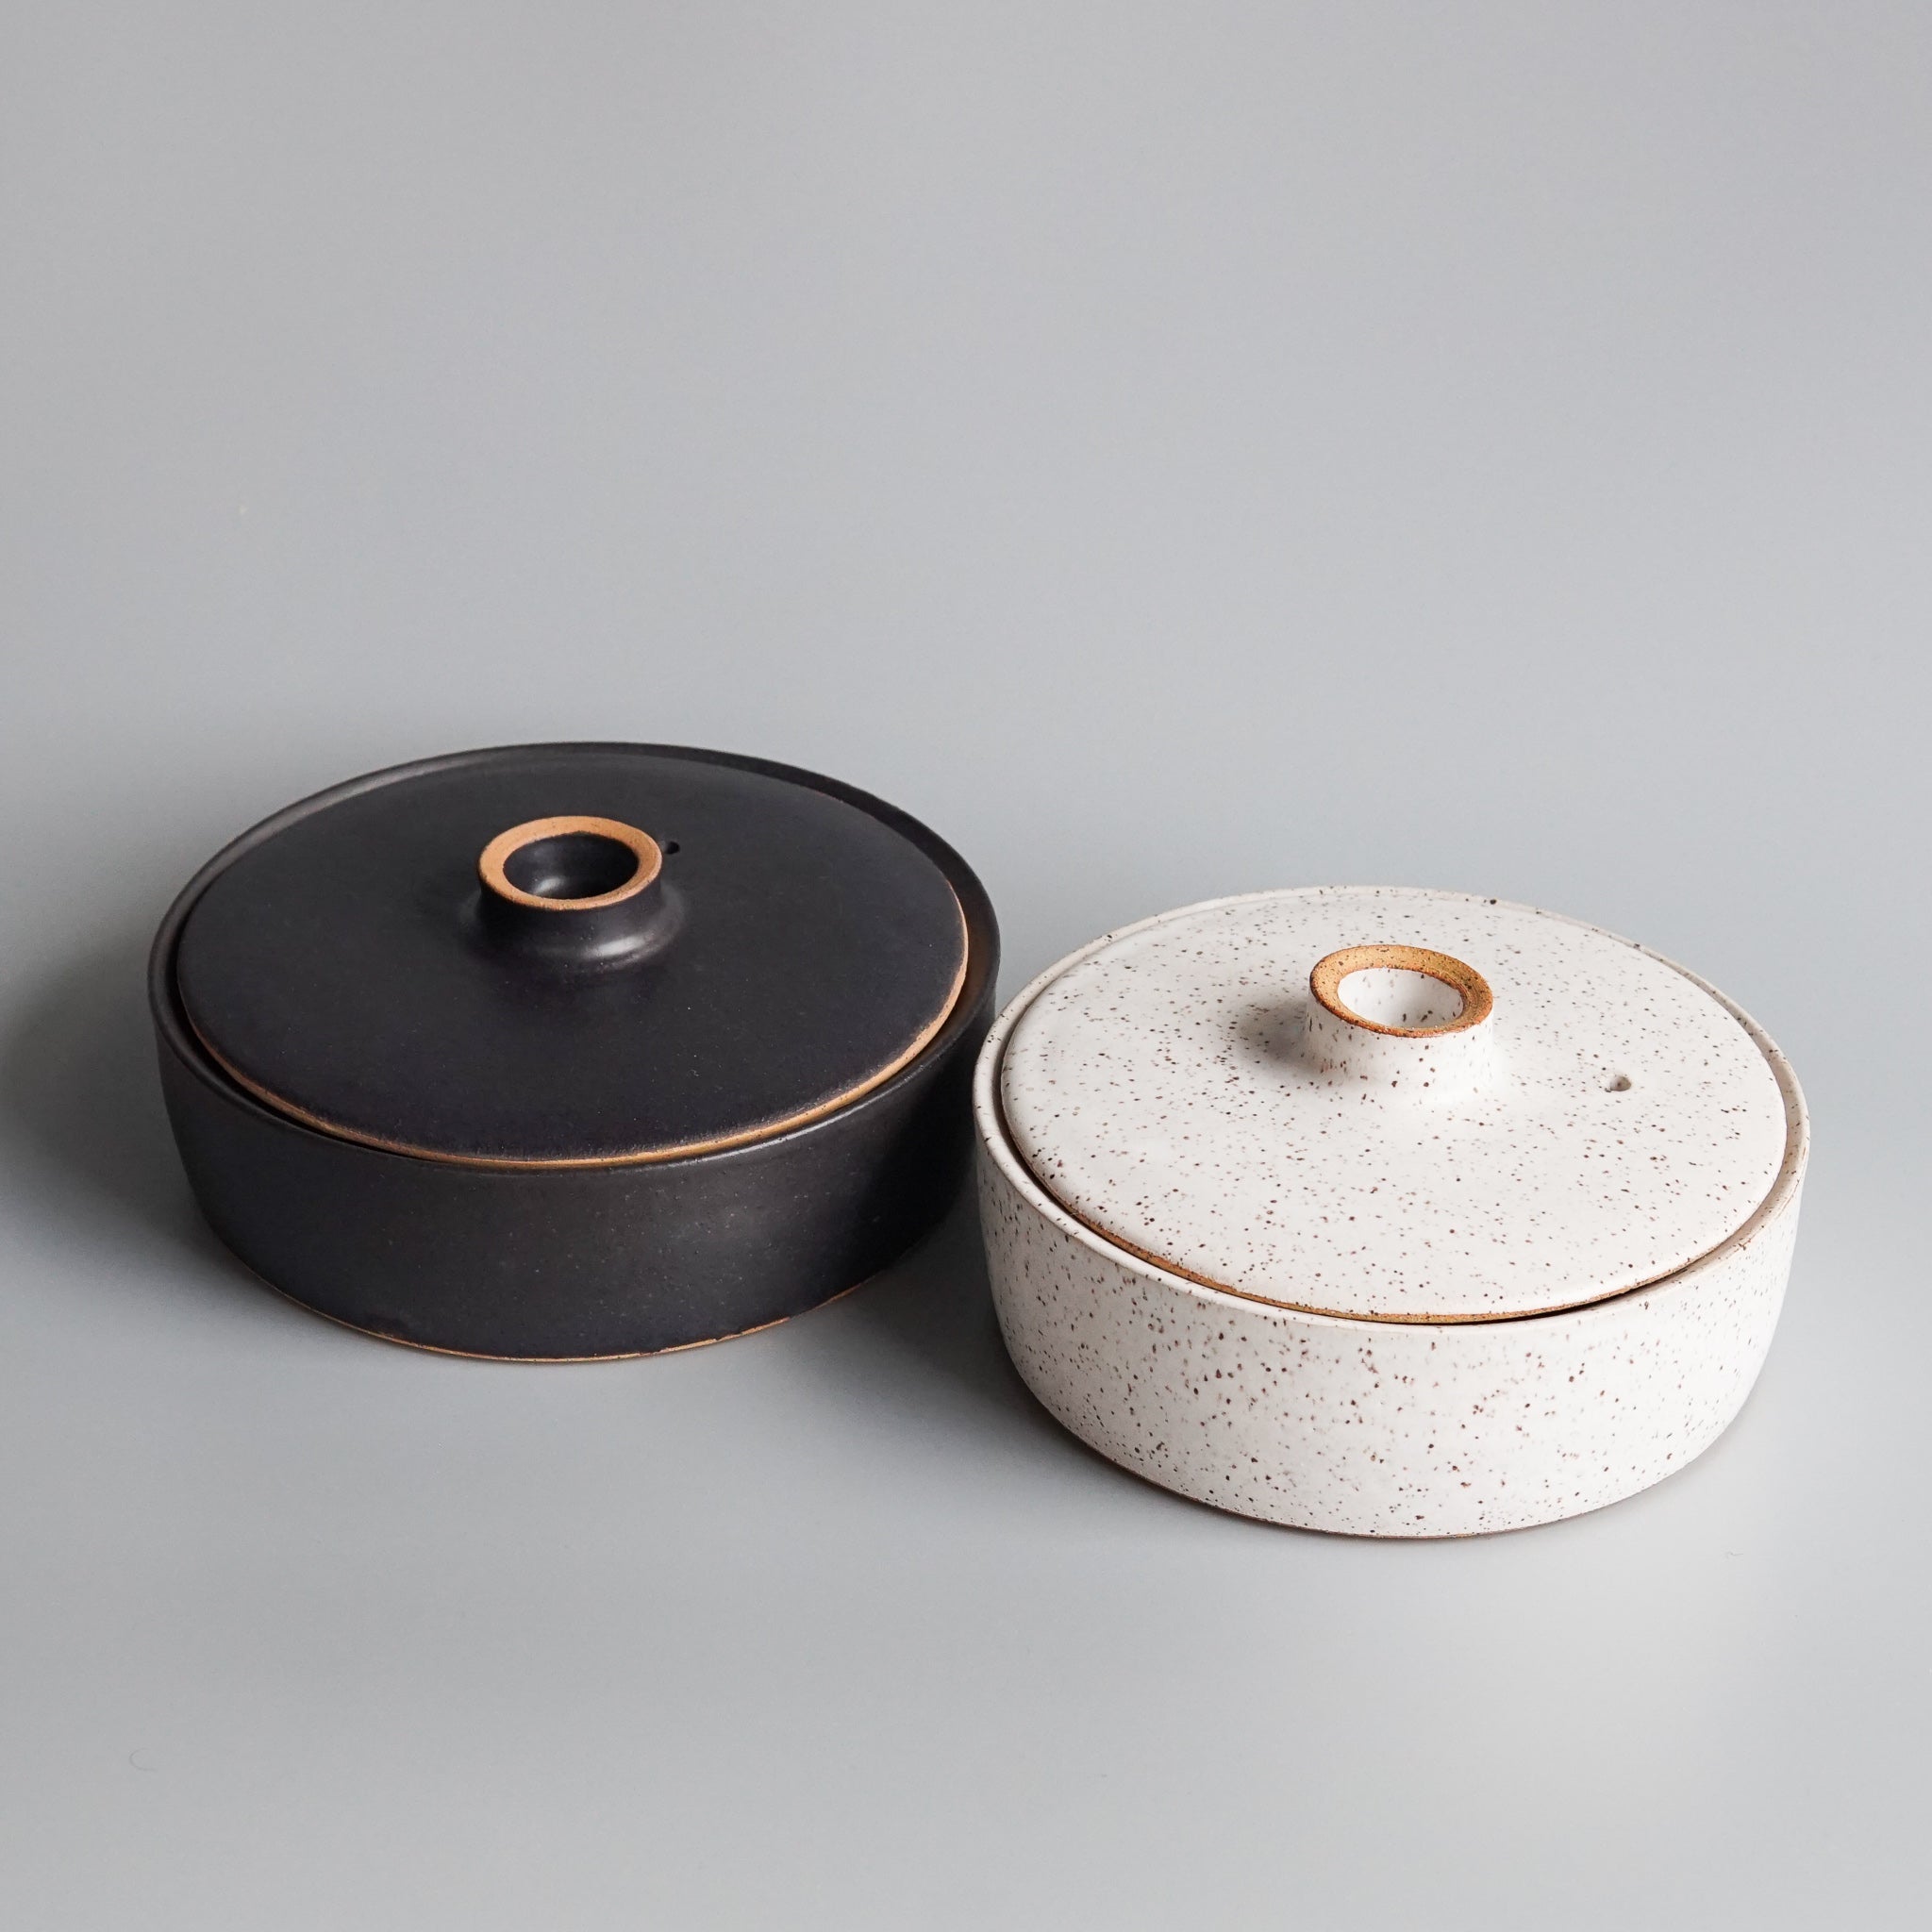 Byun Ceramics: Tortilla Warmer